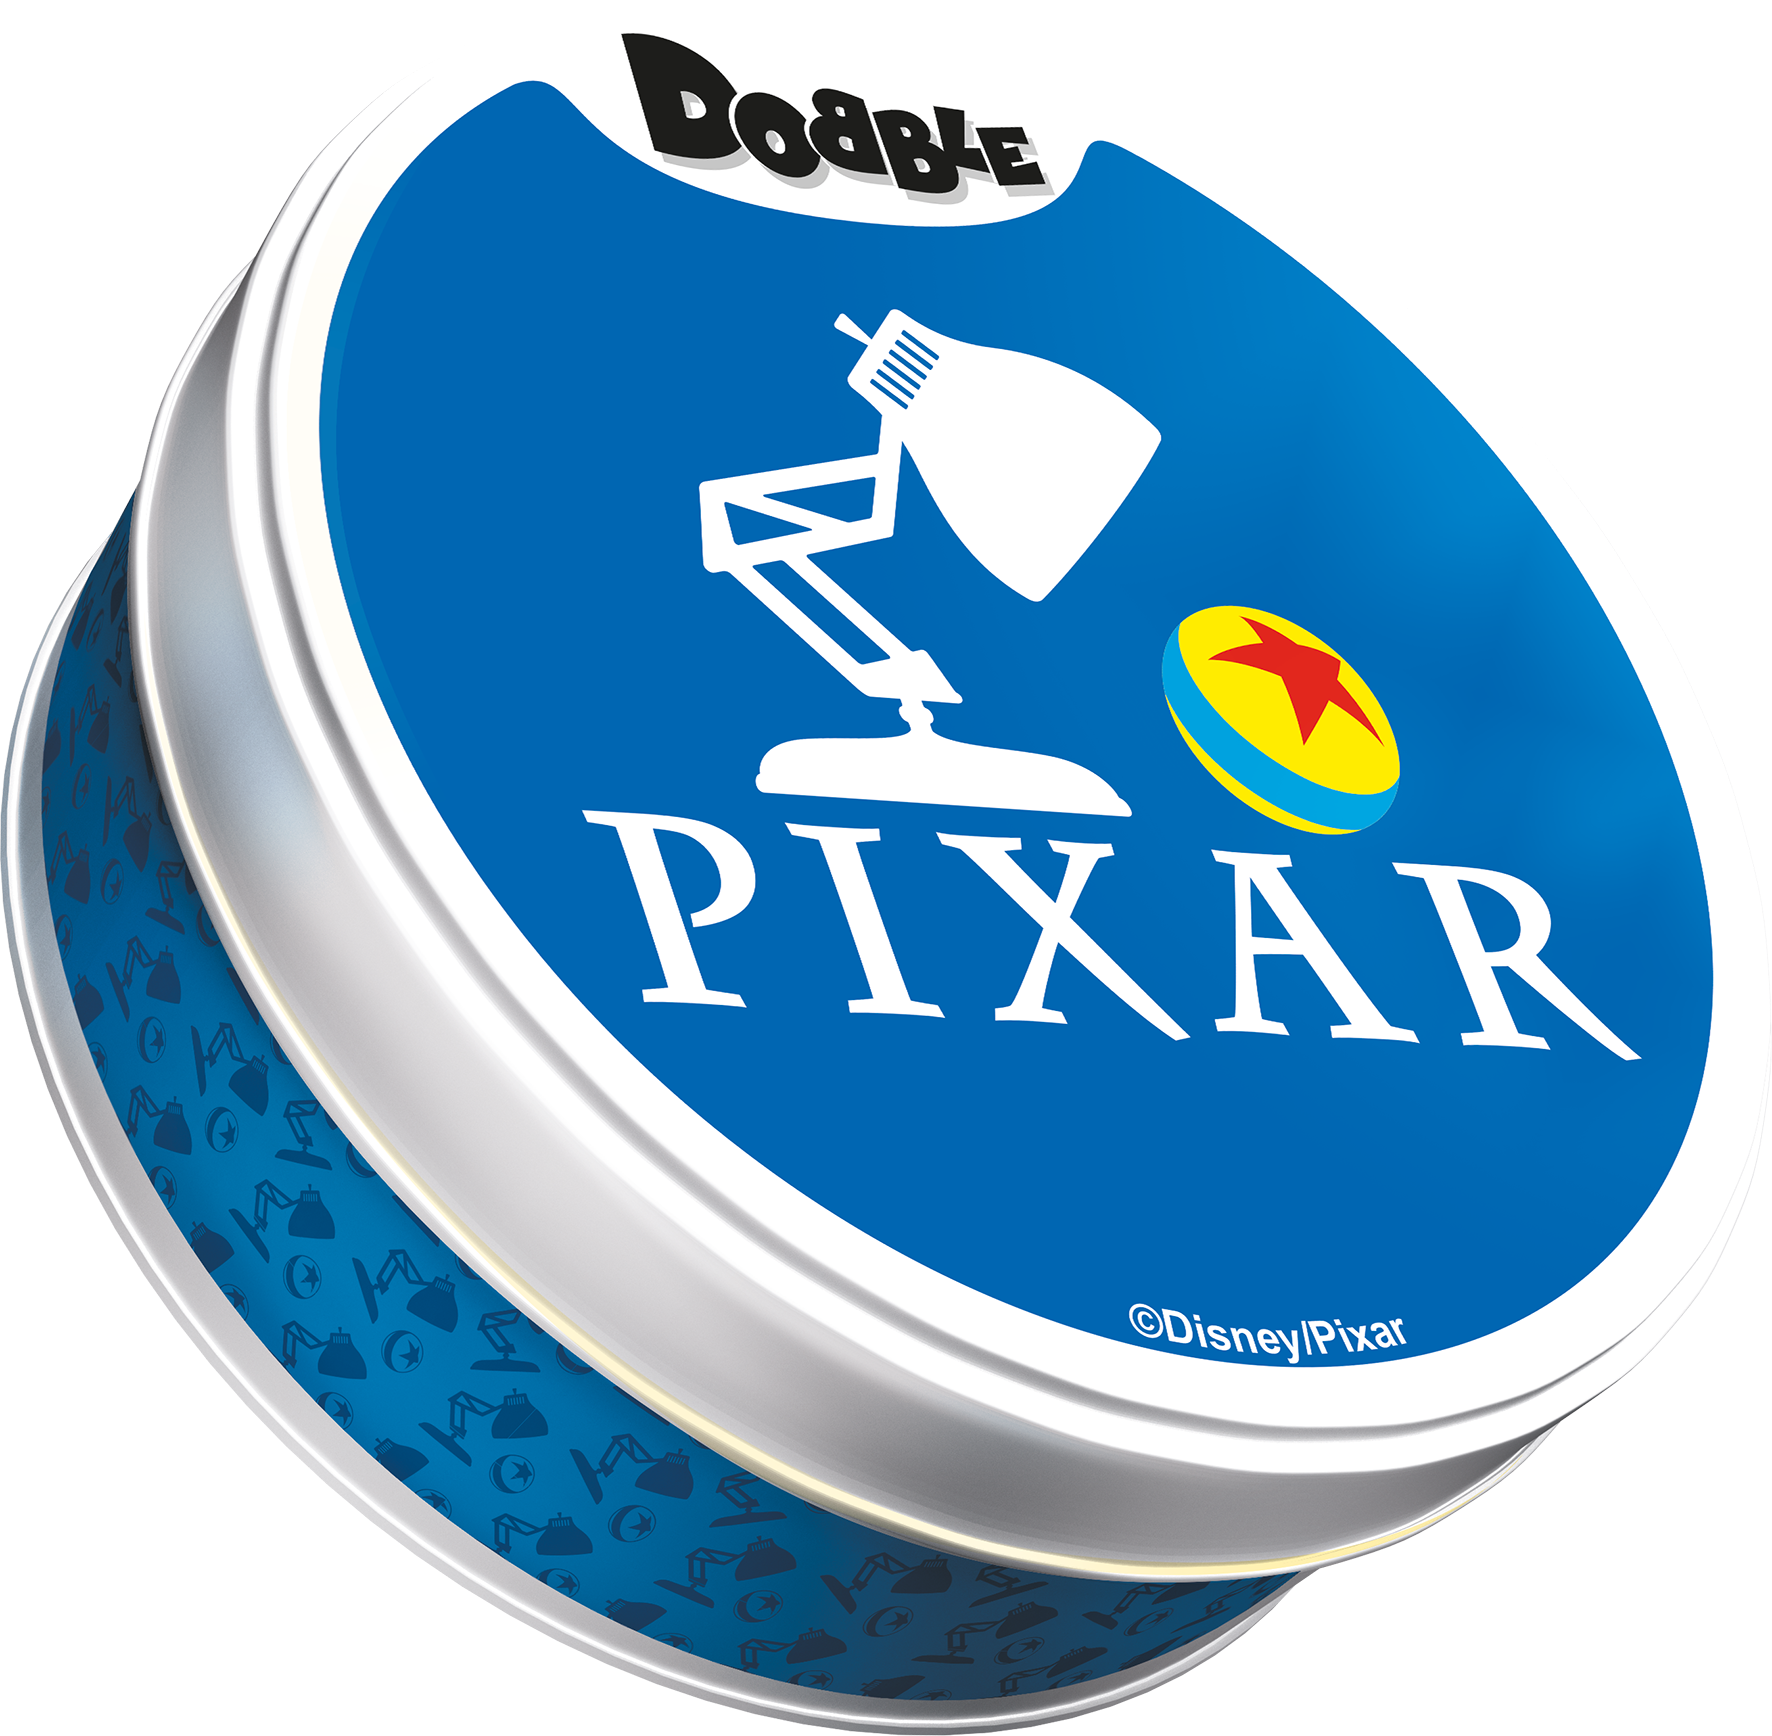 Dobble Pixar